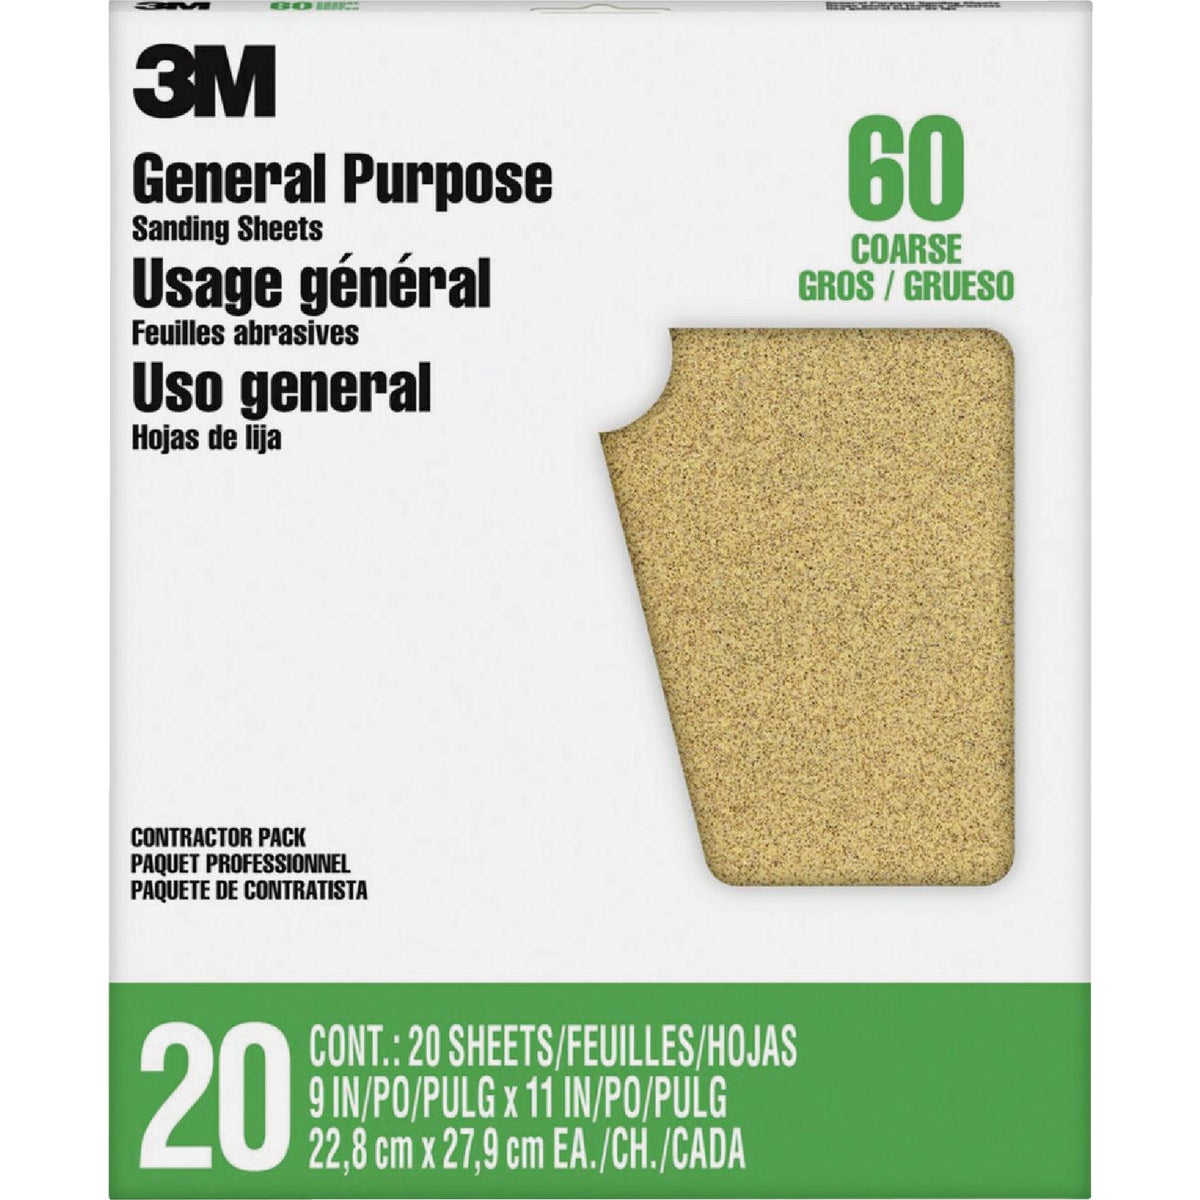 3M All-Purpose 9 In. x 11 In. 60 Grit Coarse Sandpaper (25-Pack)